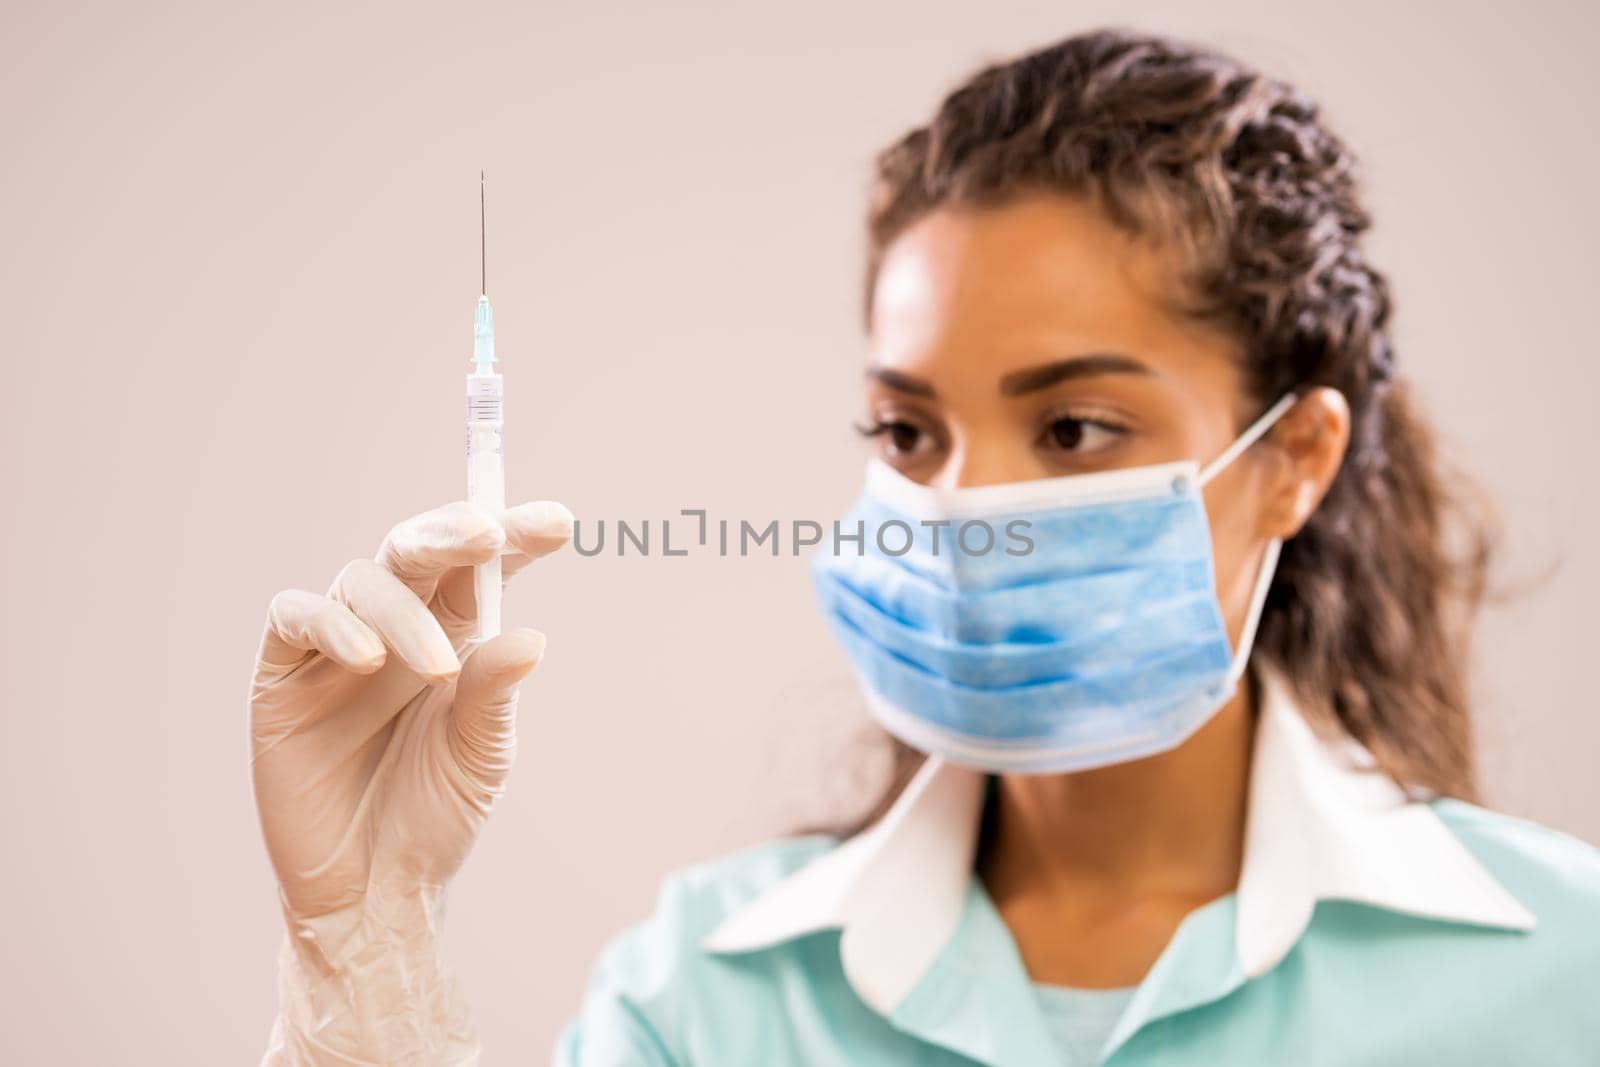 Nurse by djoronimo